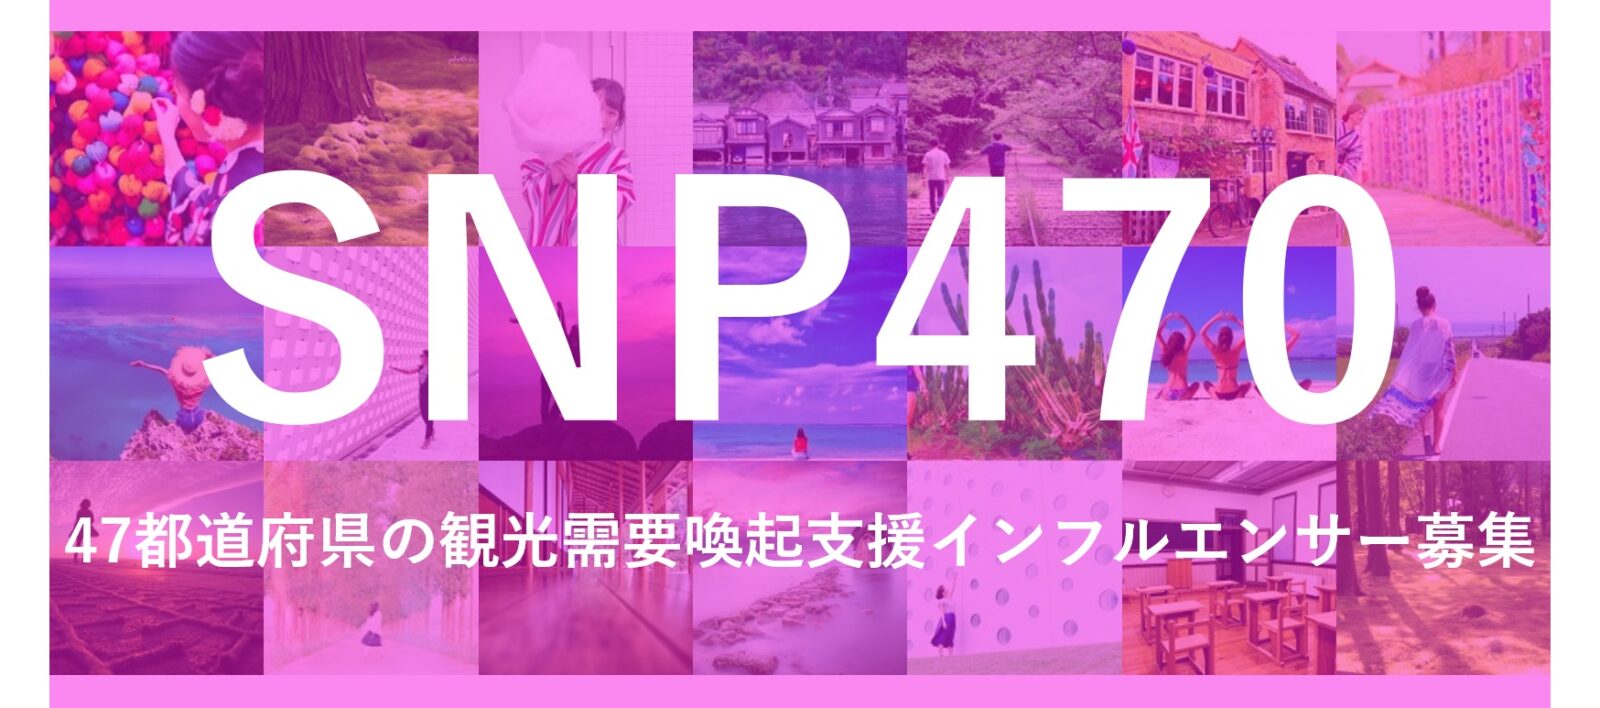 SNP470 47都道府県の観光需要喚起支援インフルエンサー募集